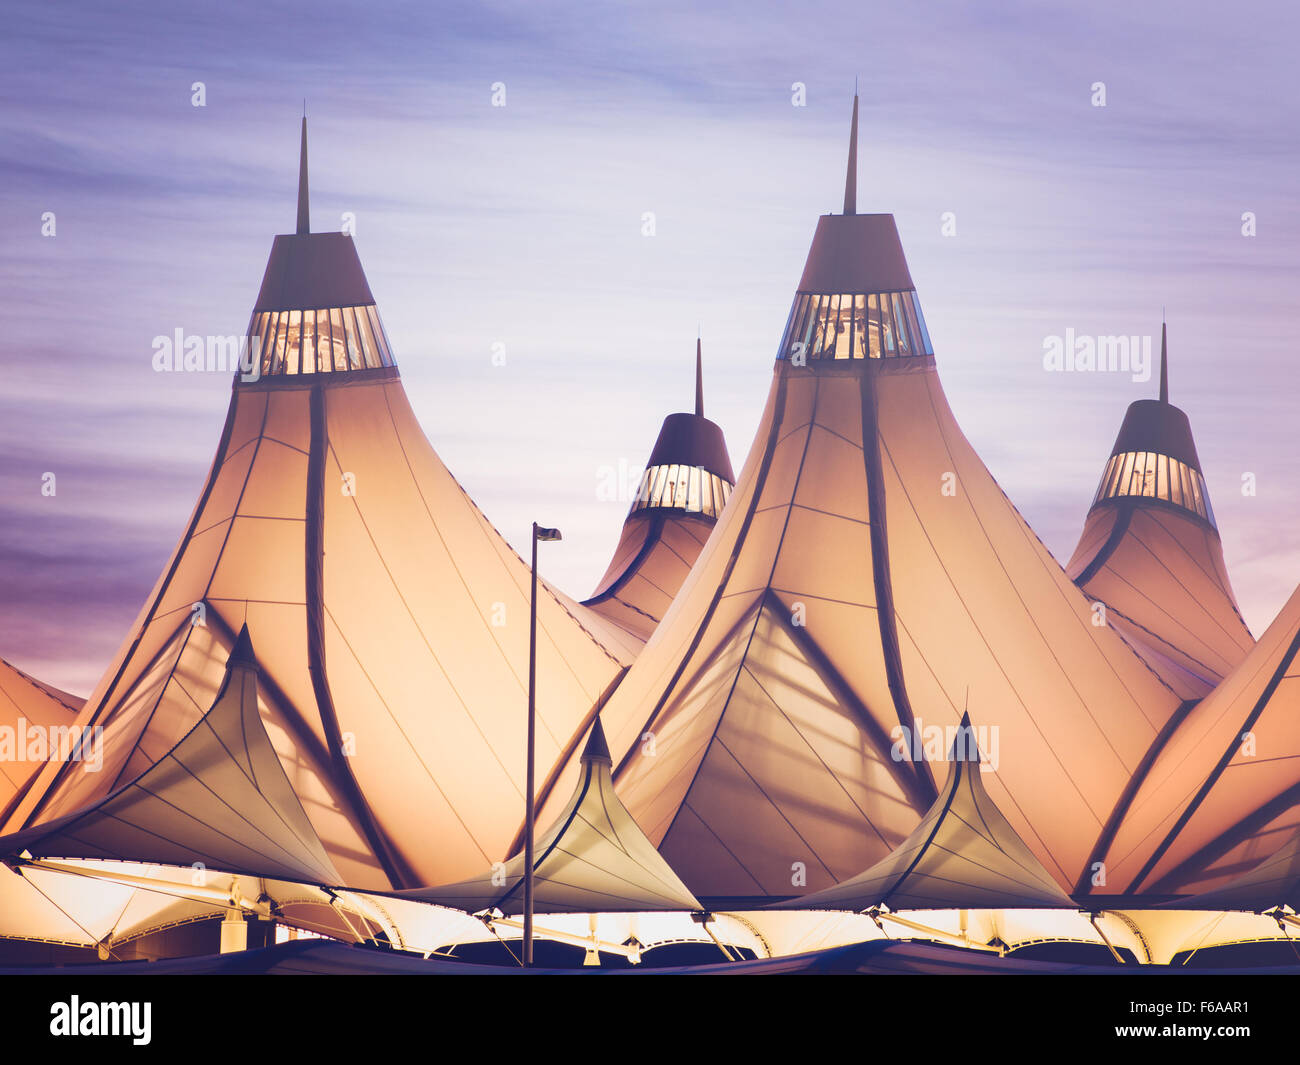 Glühende Zelte von DIA bei Sonnenaufgang. Denver International Airport bekannt für Spitzen Dach. Gestaltung von Dach reflektiert Schnee-capp Stockfoto